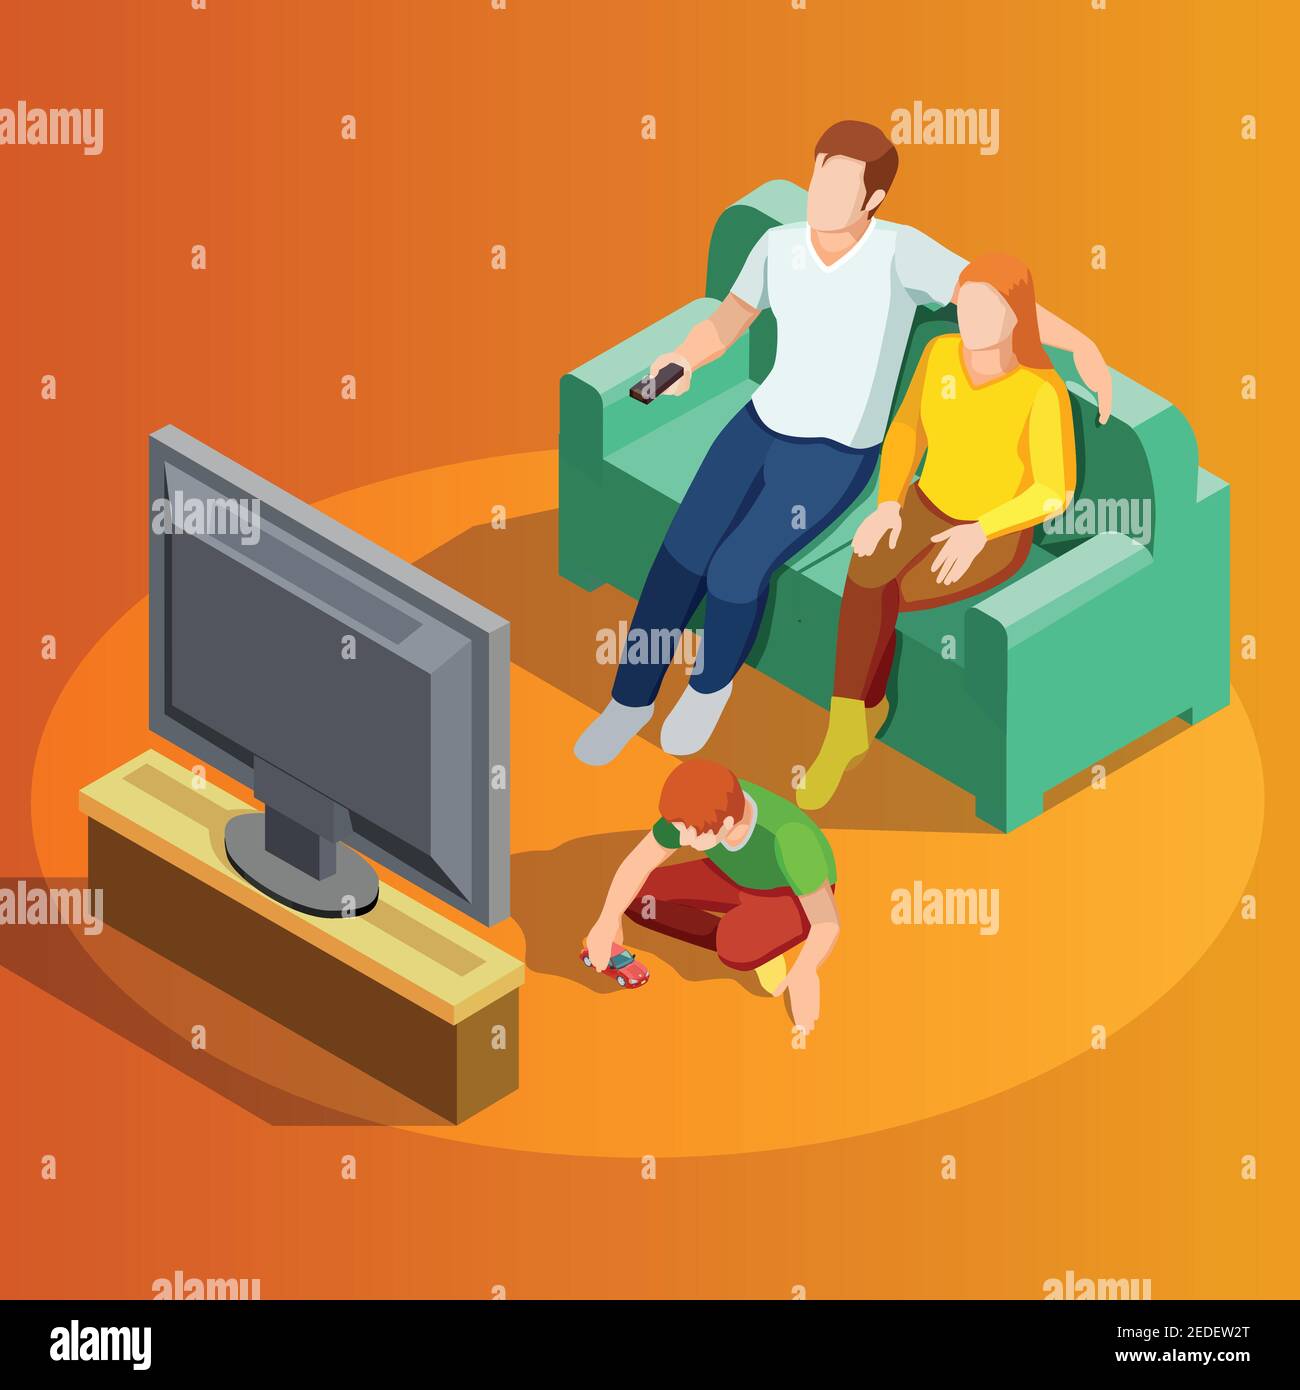 Junge Familie, die im Wohnzimmer mit einem kleinen Jungen Fernsehen schaut Spielen auf Teppich isometrische Ansicht Vektor Illustration Stock Vektor